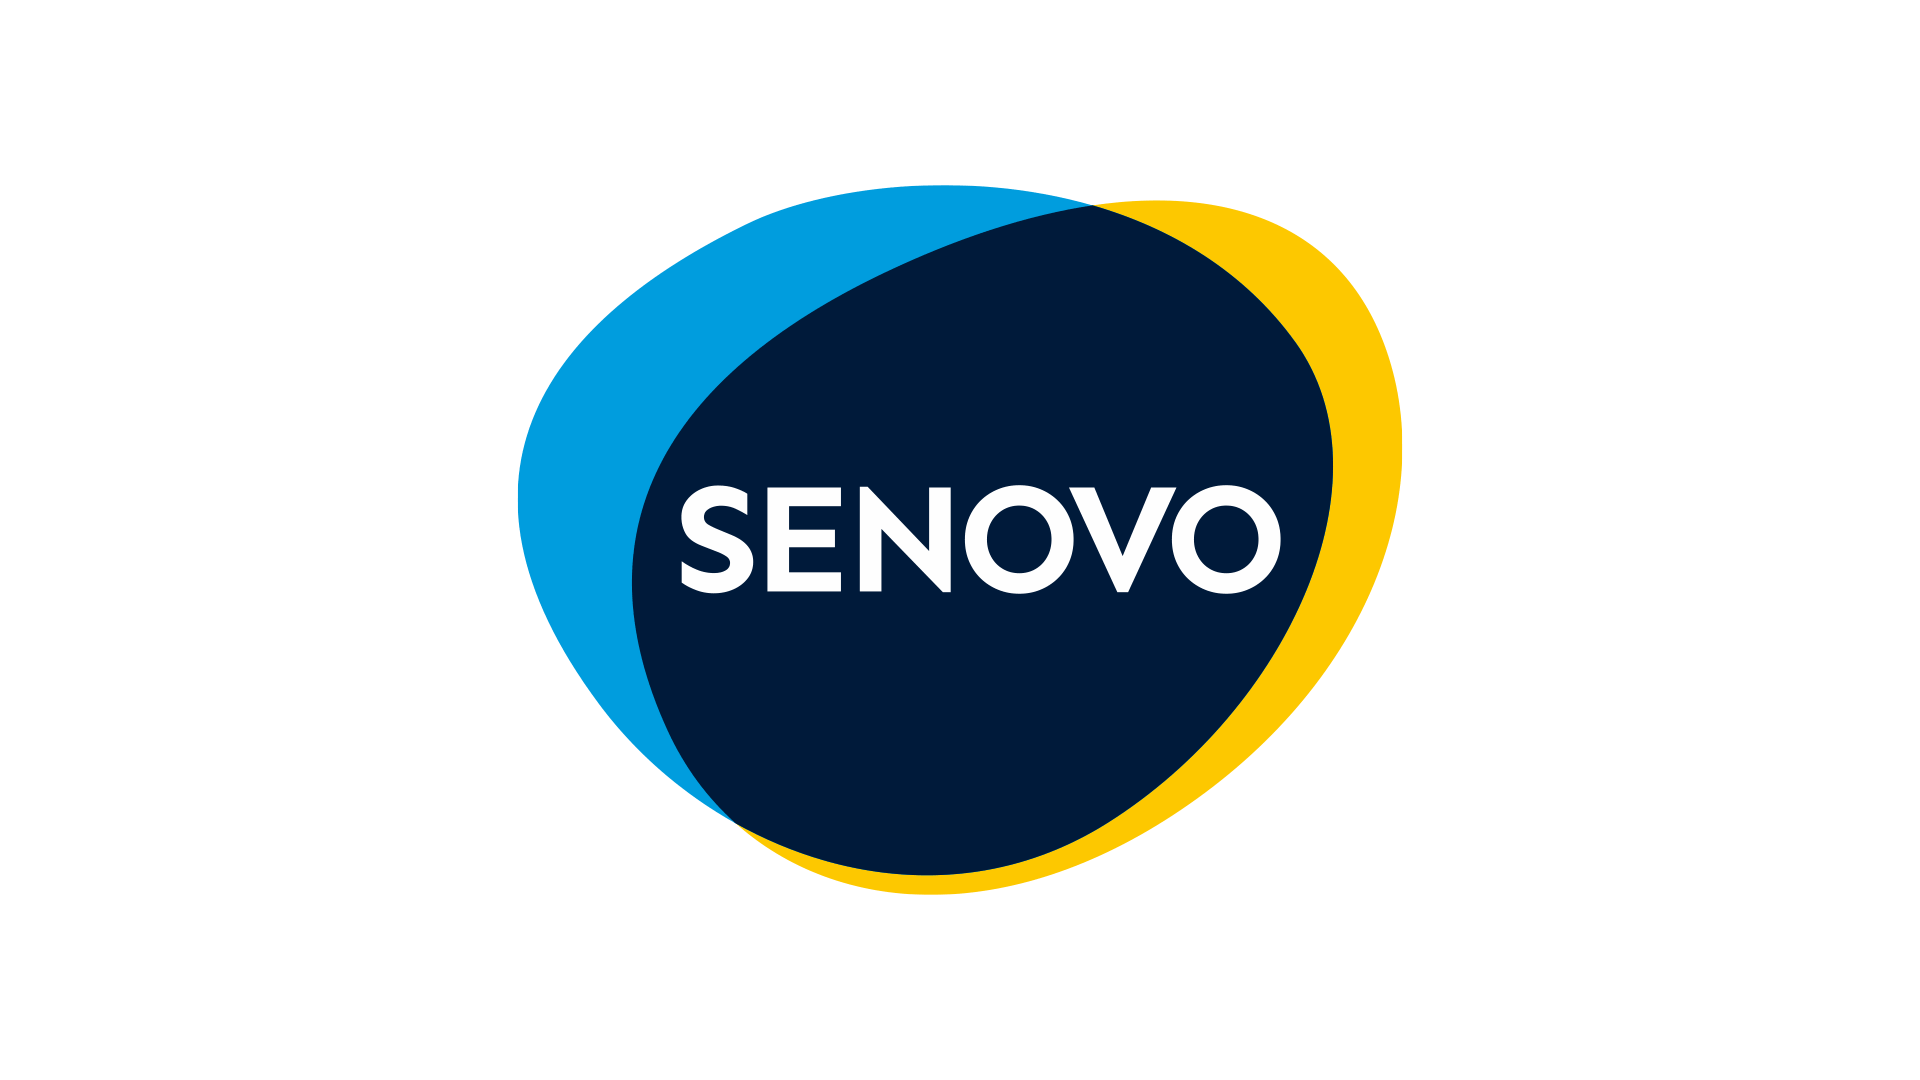 SENOVO CAPITAL MANAGEMENT GMBH